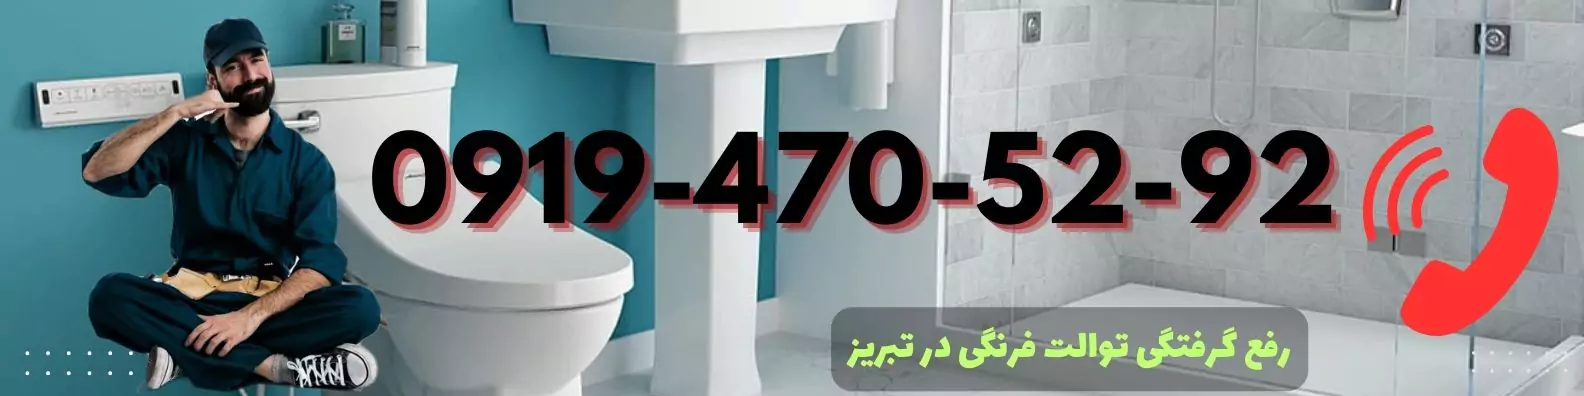 شماره لوله بازکن توالت فرنگی در تبریز